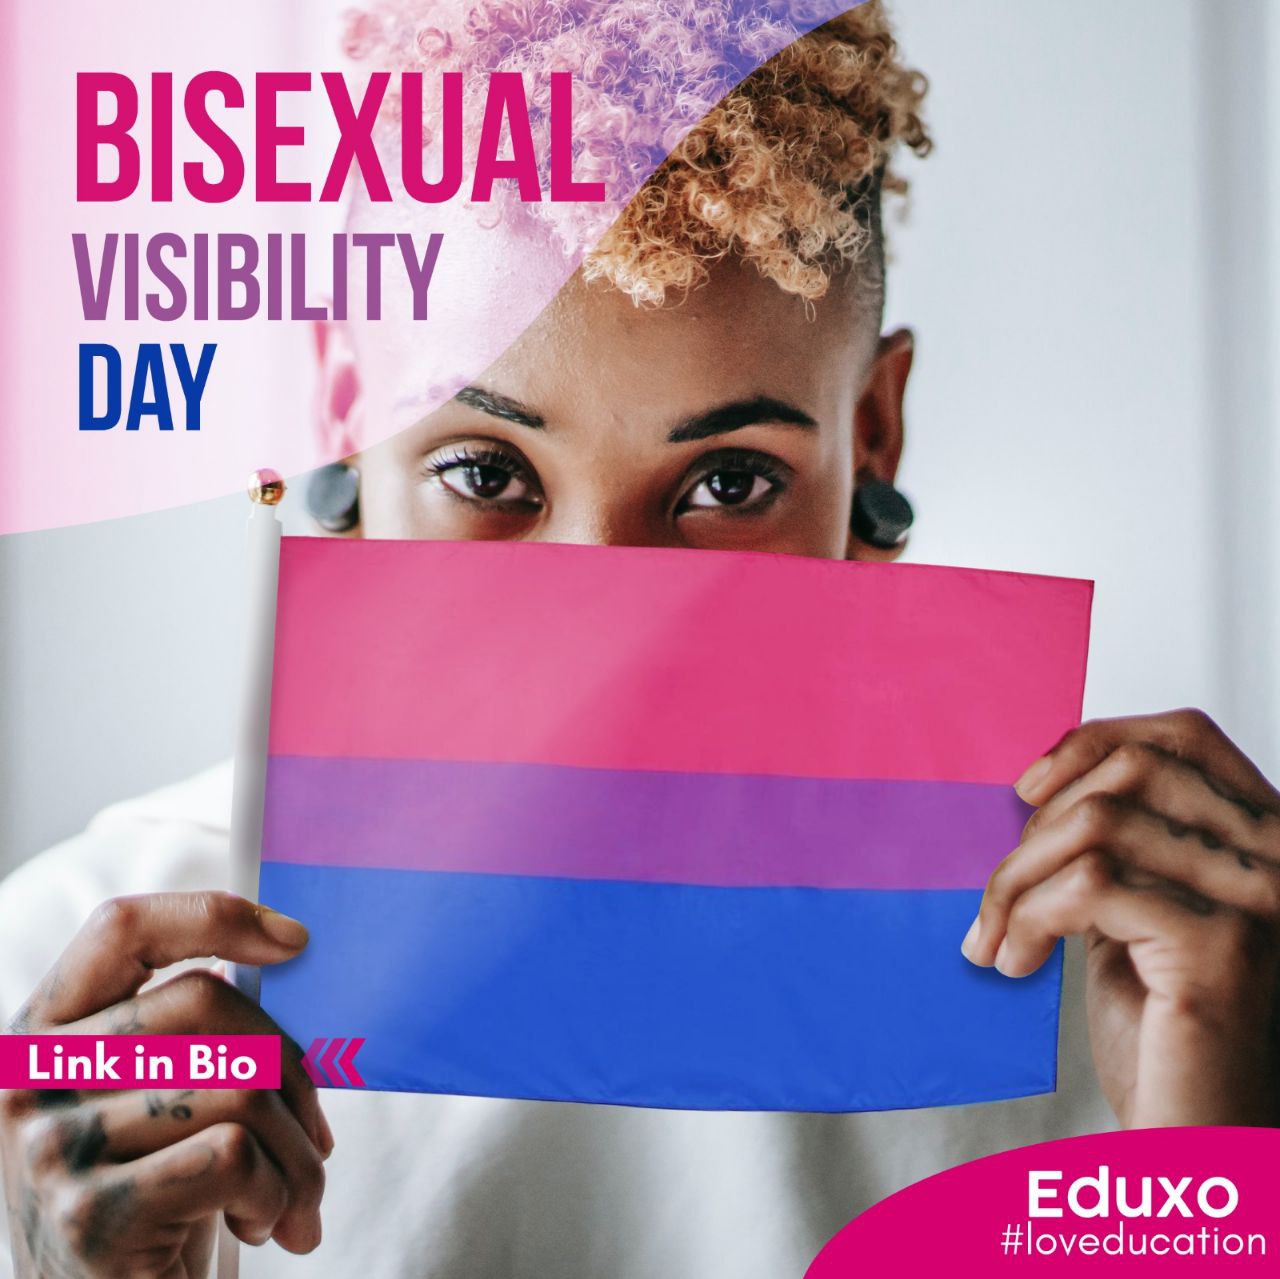 Al momento stai visualizzando Bisexual visibility day